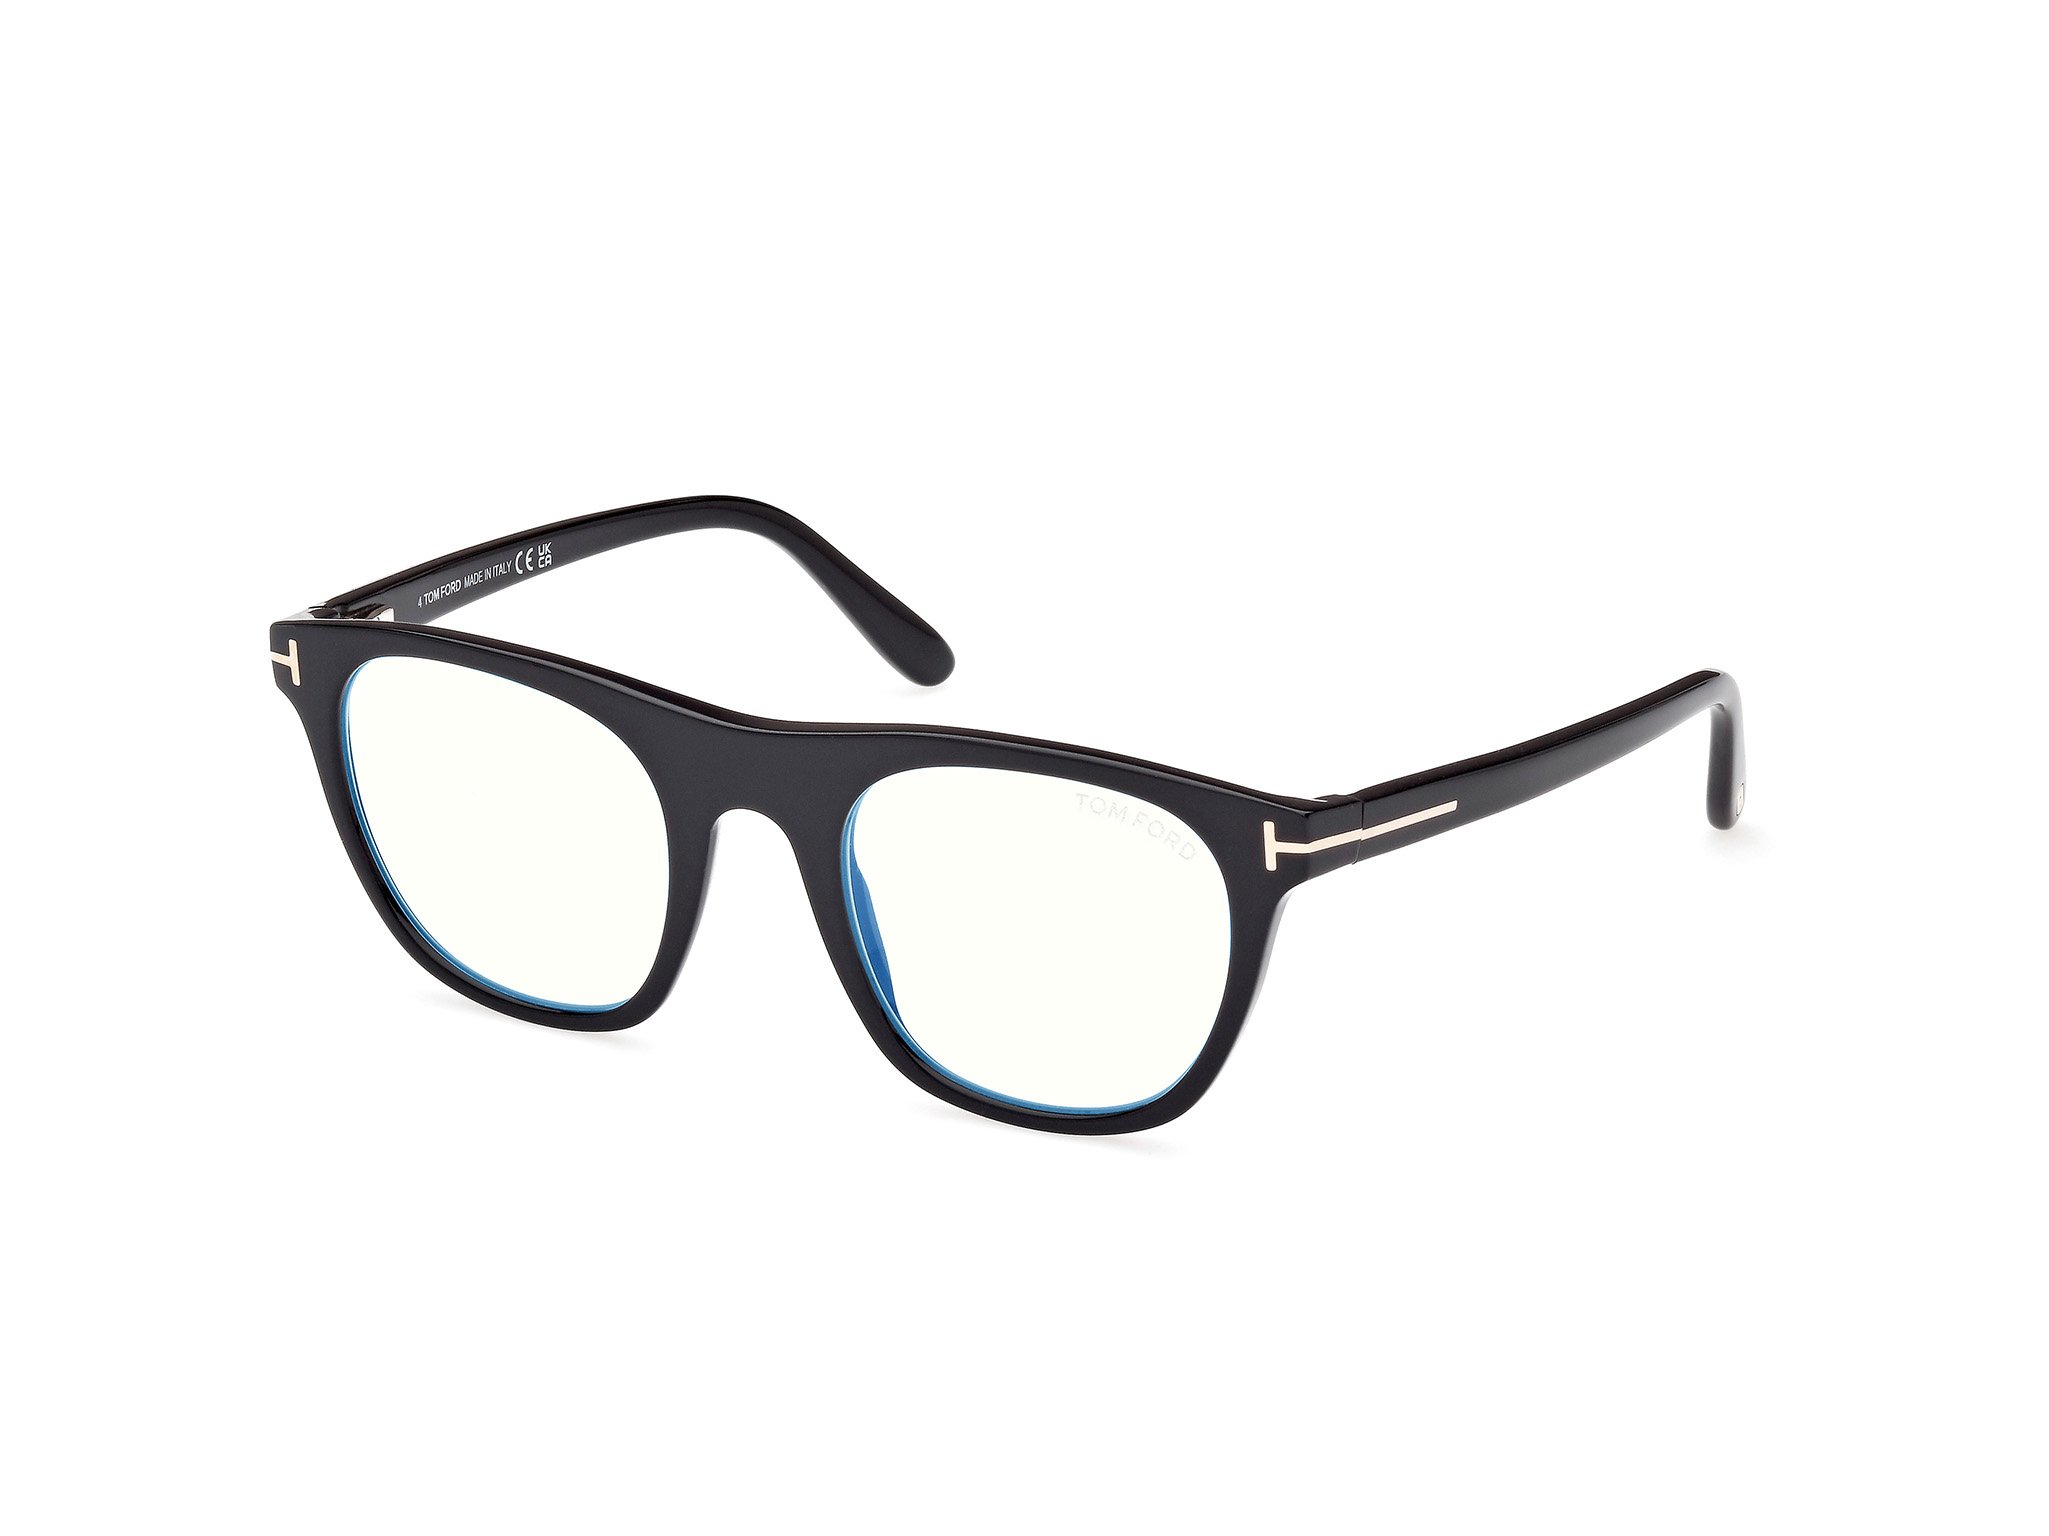 Das Bild zeigt die Korrektionsbrille FT5895-B 001 von der Marke Tom Ford in schwarz.